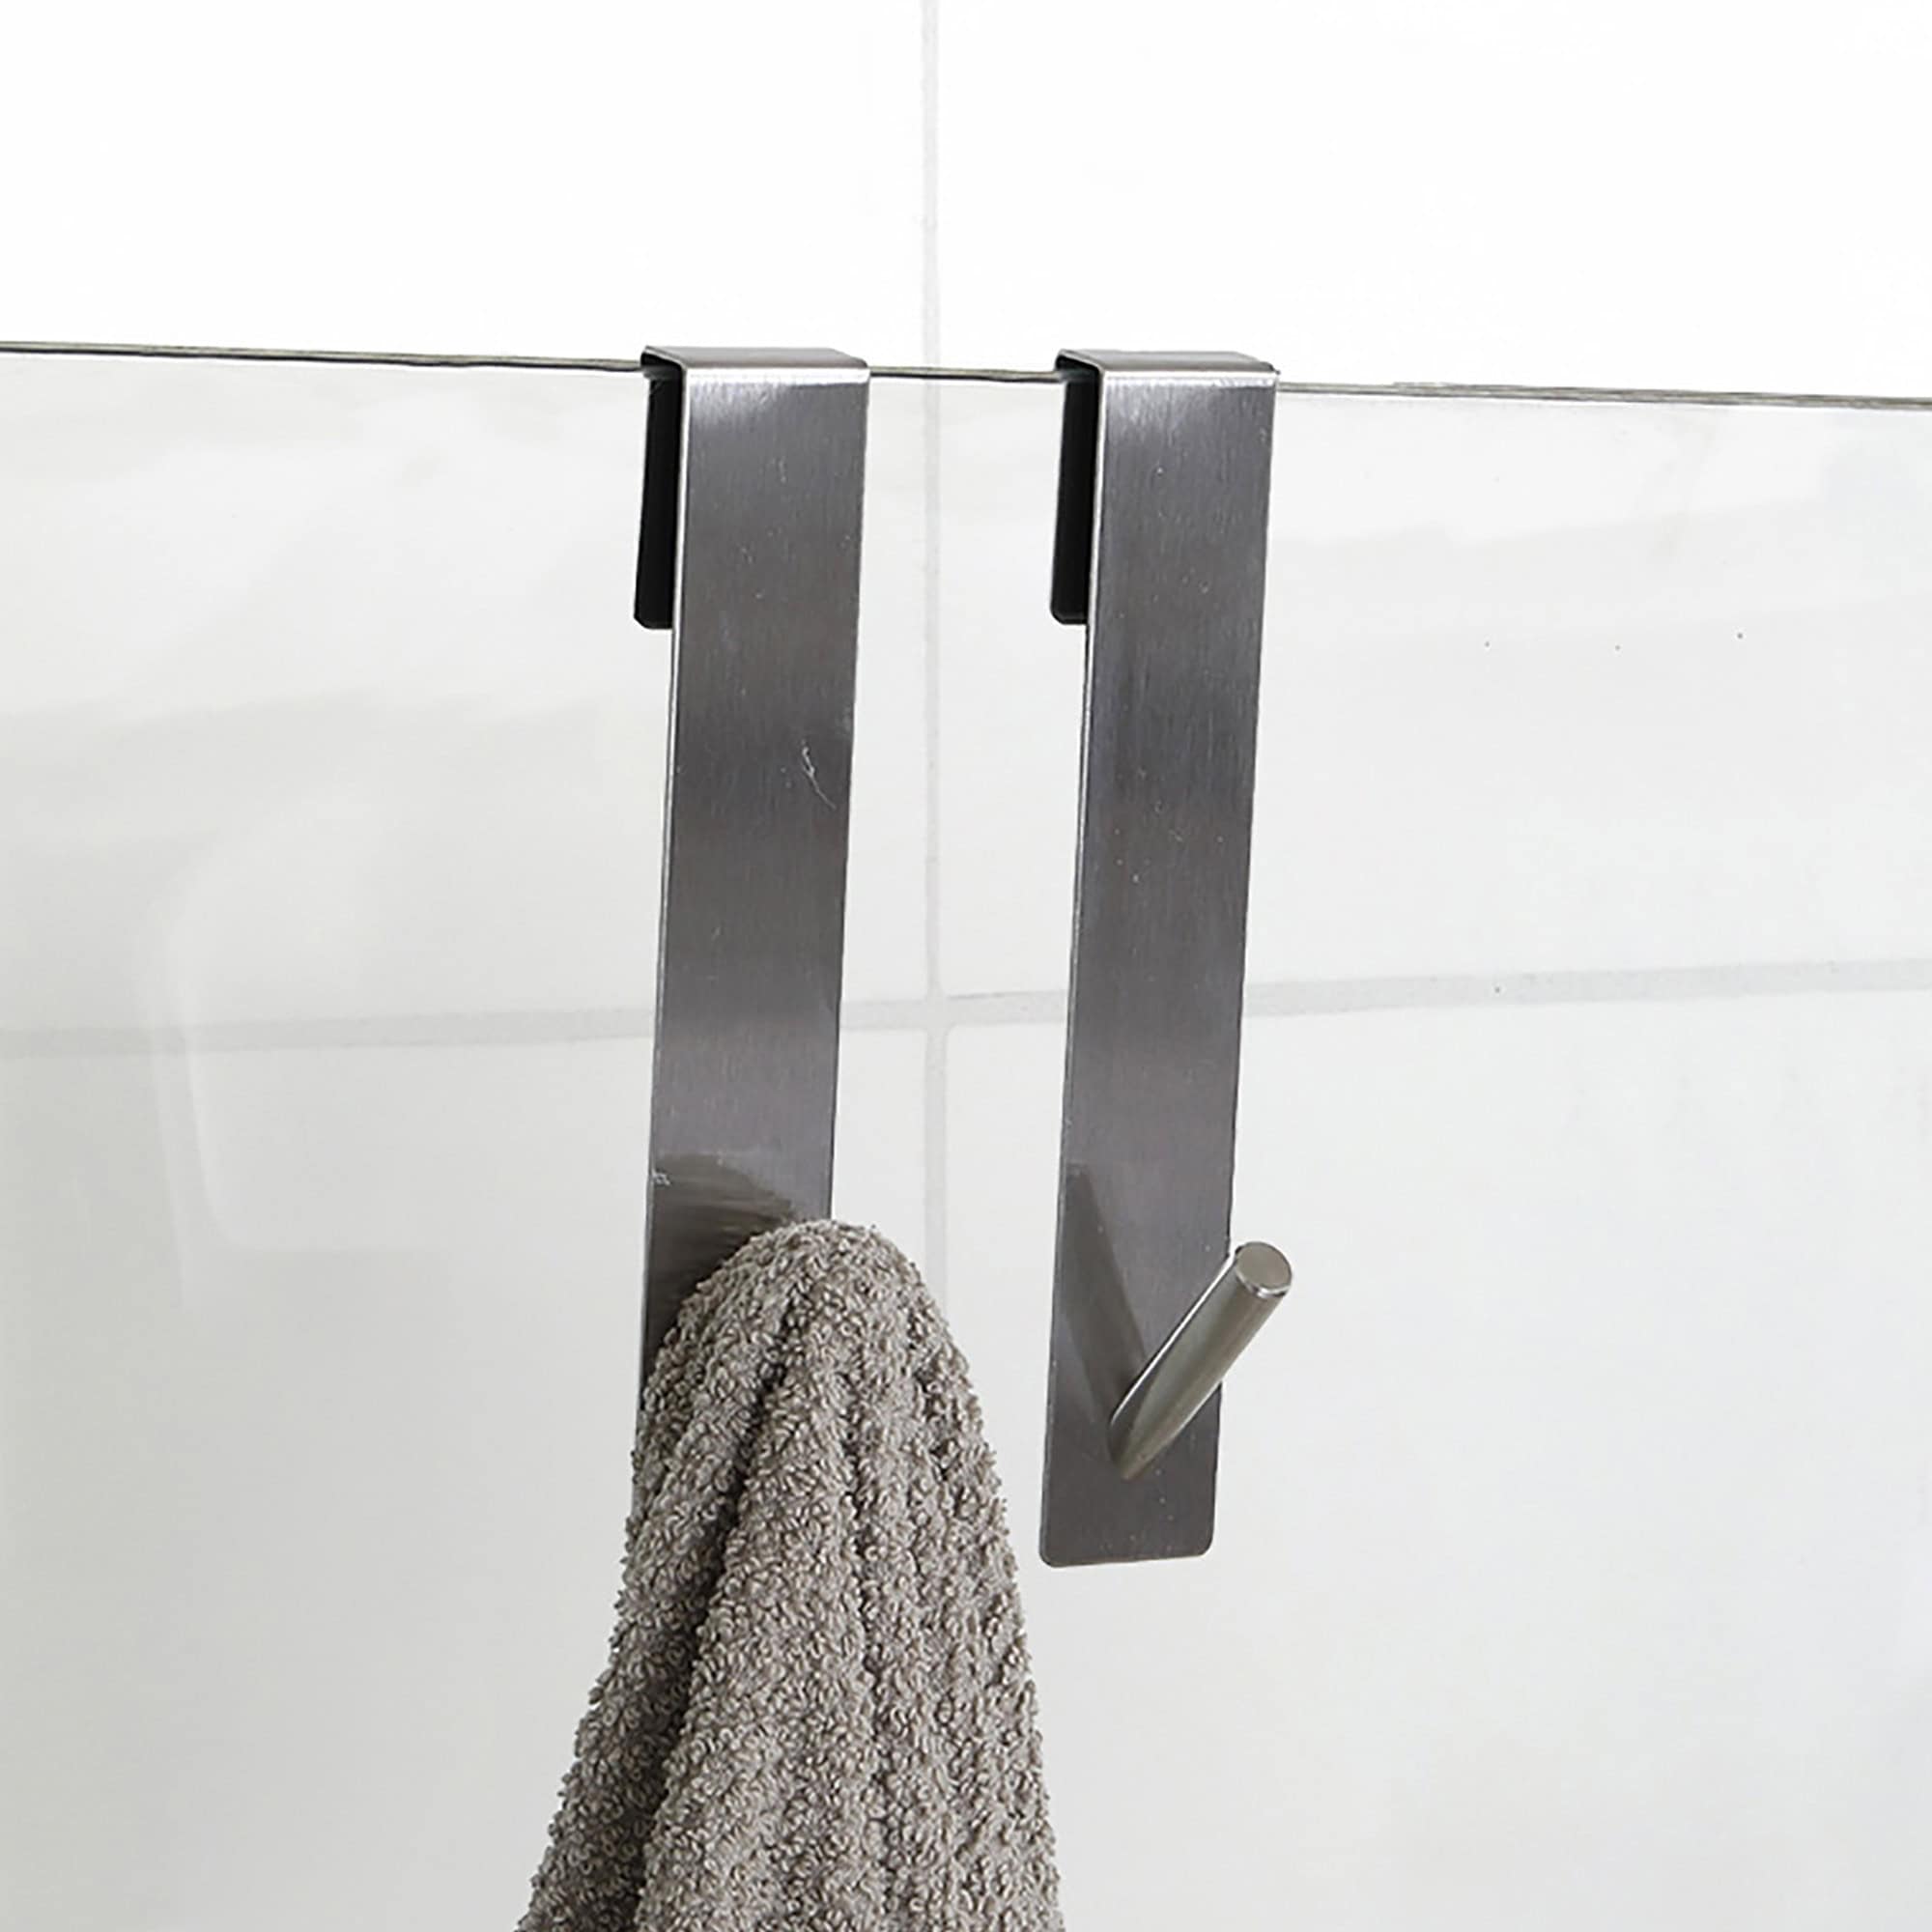 chrome shower hooks on frameless glass door